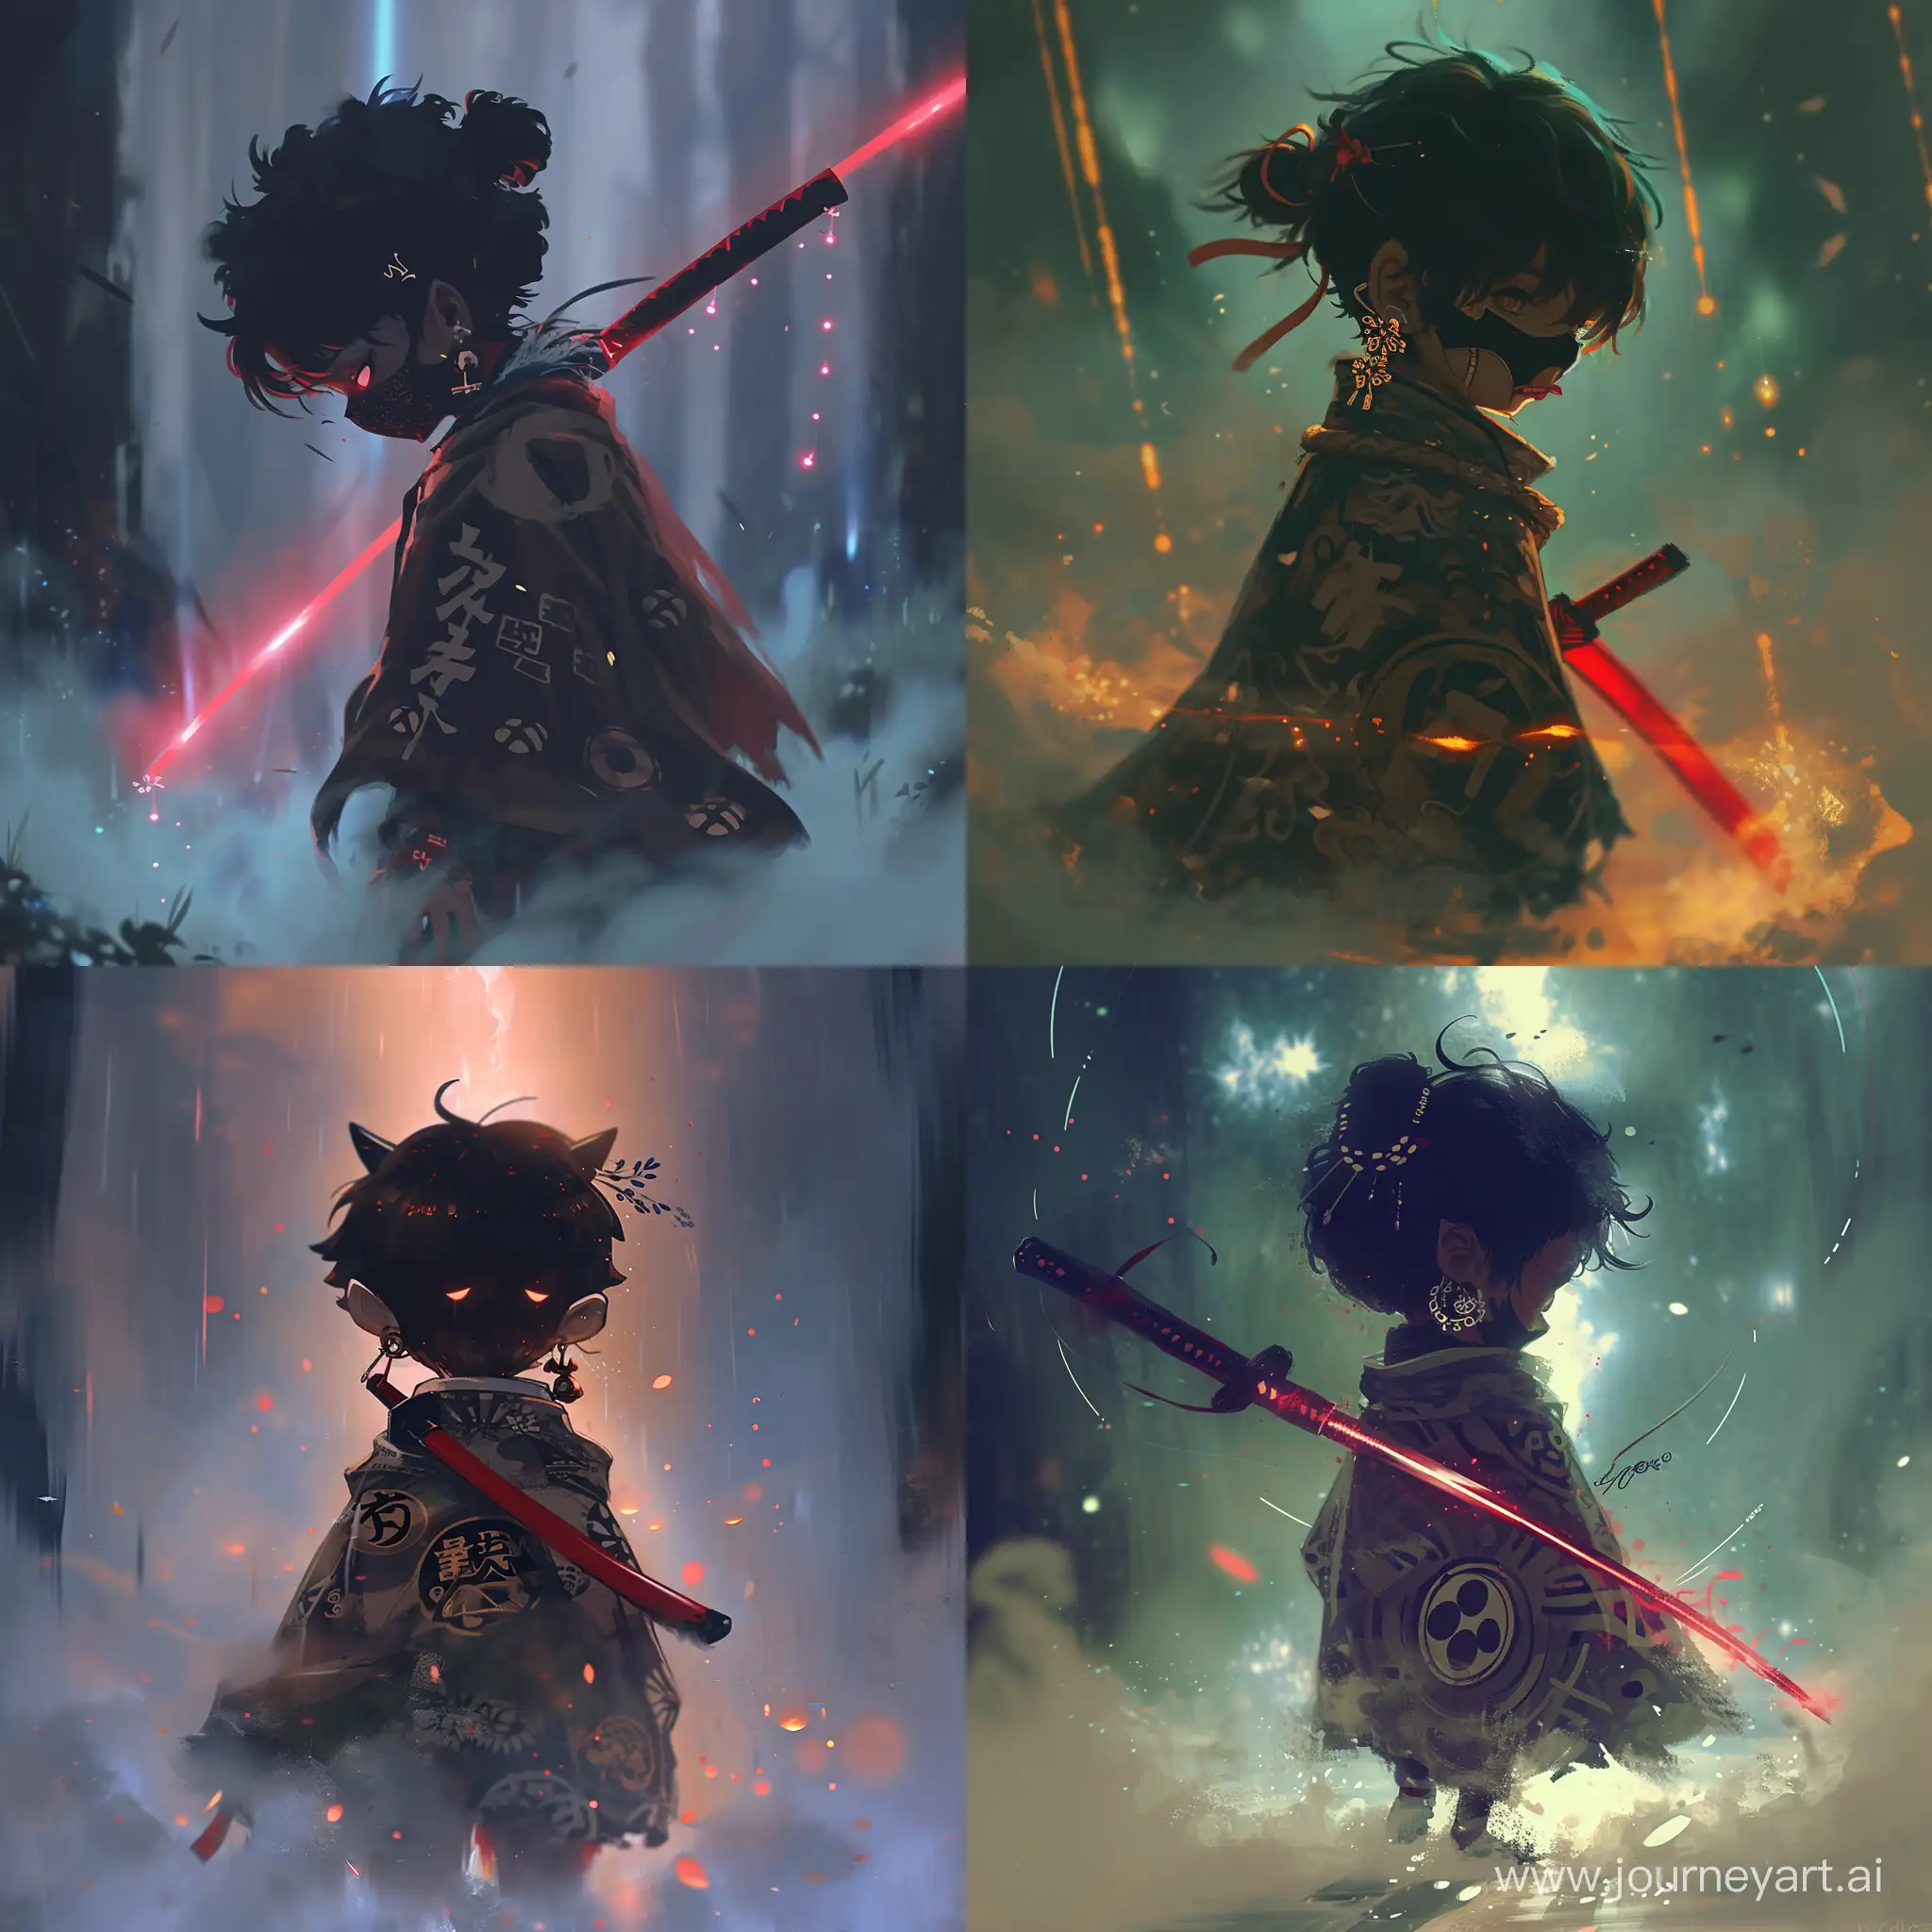 Маленький демон подросток, от которой исходит красивый магический туман, на нем японские серьги и плащ, украшен японскими символами. В него вонзен темно красный меч, идет по туману с тёмной маской, закрывающей лицо. Anime style